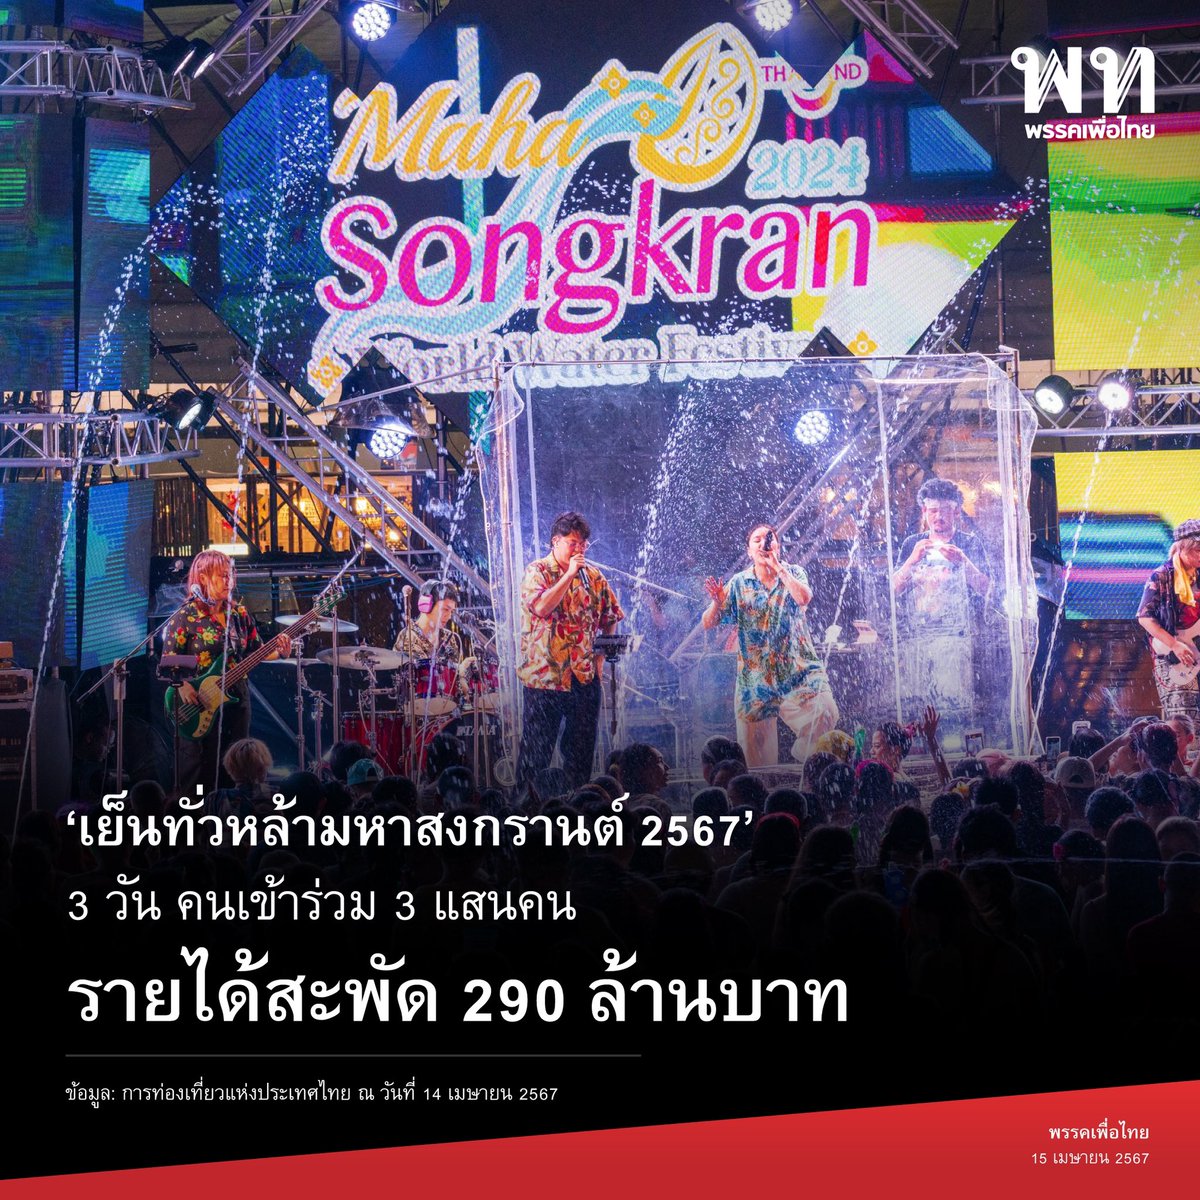 ‘เย็นทั่วหล้ามหาสงกรานต์ 2567’ 💦 3 วัน คนเข้าร่วม 3 แสนคน รายได้สะพัด 290 ล้านบาท

การท่องเที่ยวแห่งประเทศไทย (ททท.) เผยผลการจัดงาน Maha Songkran World Water Festival 2024 เย็นทั่วหล้า มหาสงกรานต์ 2567 ณ บริเวณถนนราชดำเนินกลางและพื้นที่ท้องสนามหลวง ในช่วง 3 วันแรก วันที่ 11-13…